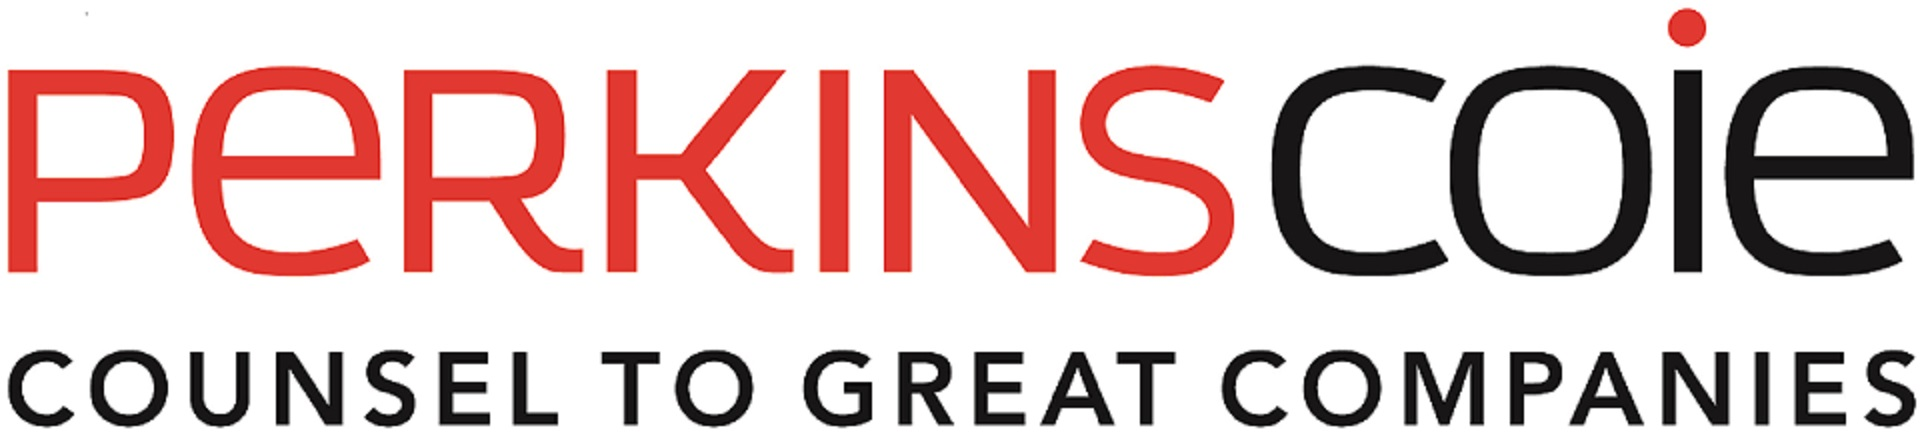 Perkins Coie LLP Company Logo